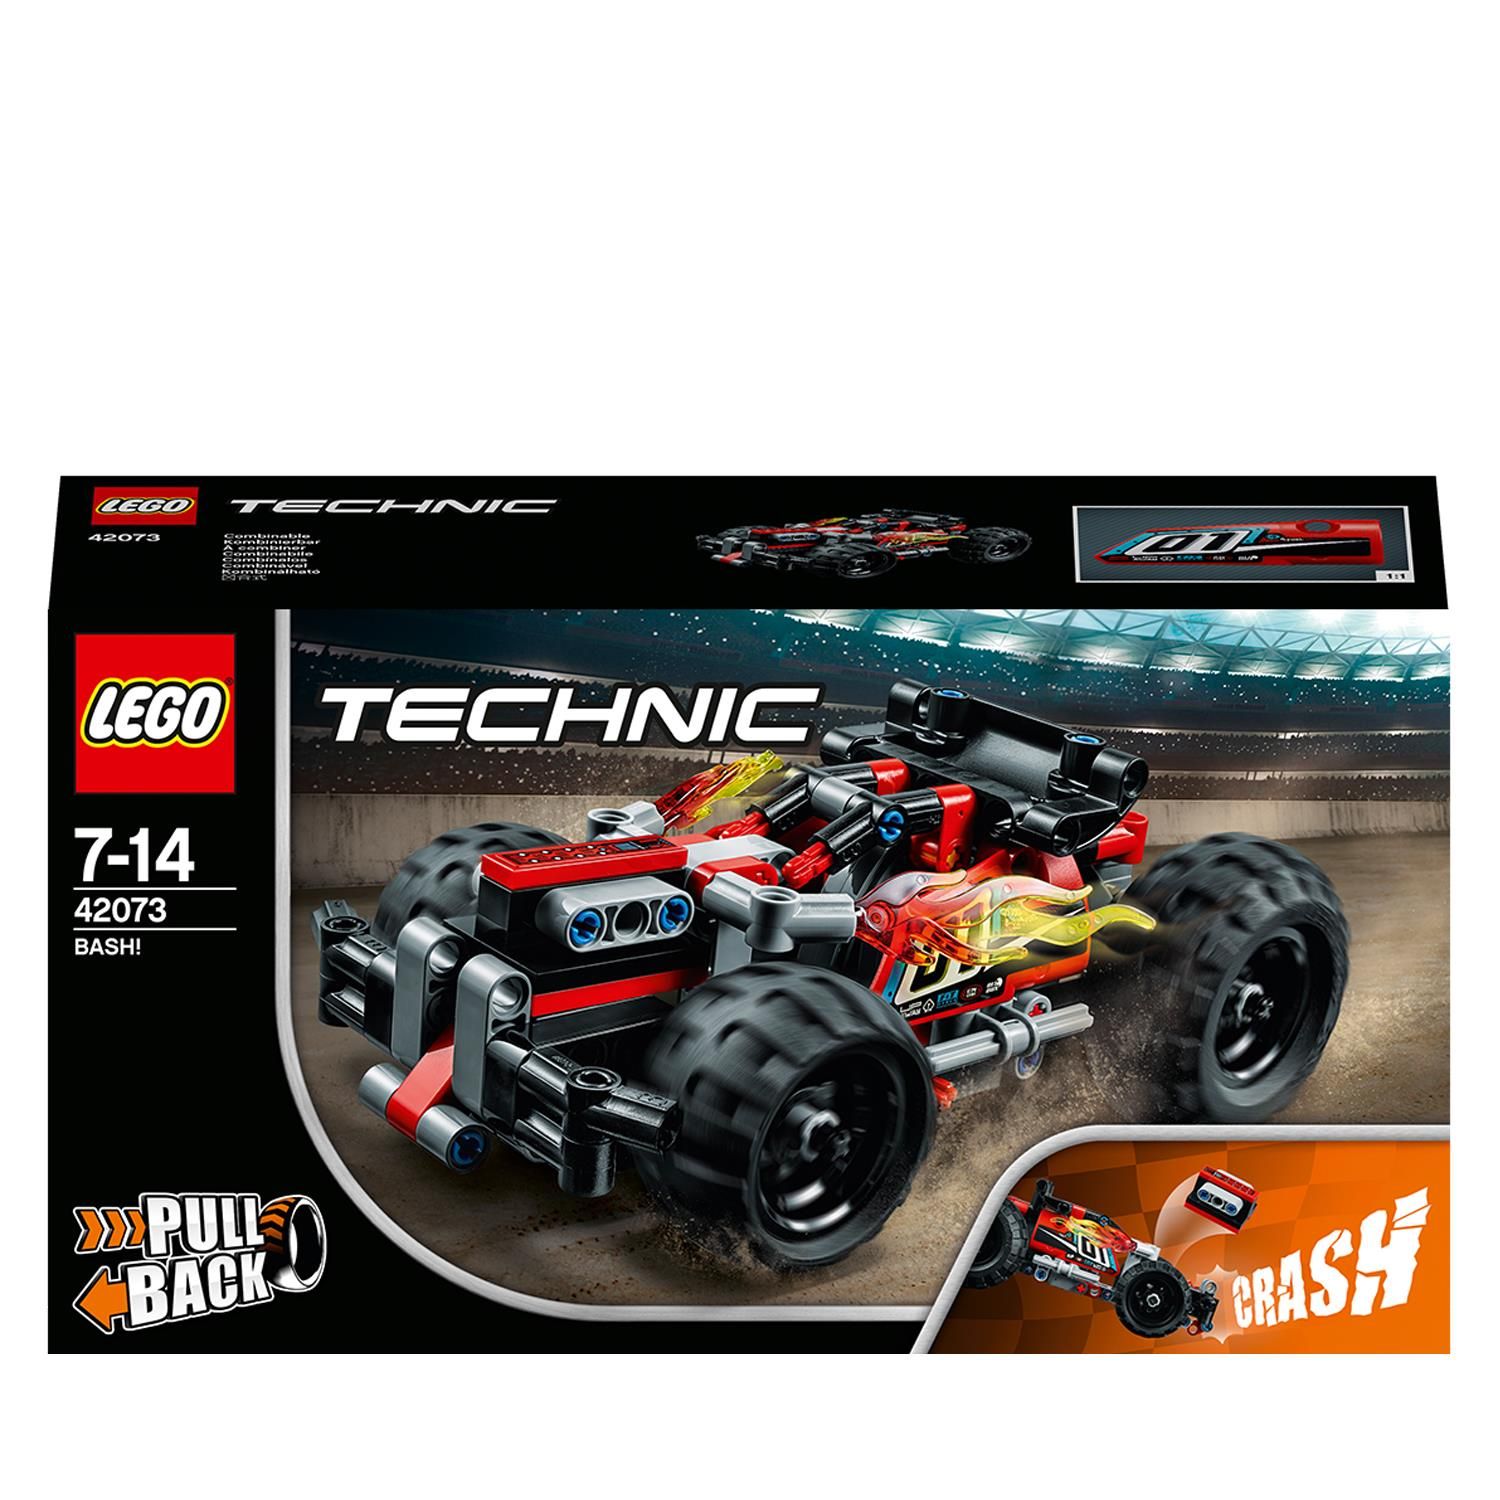 LEGO Technic Craaash! 42073